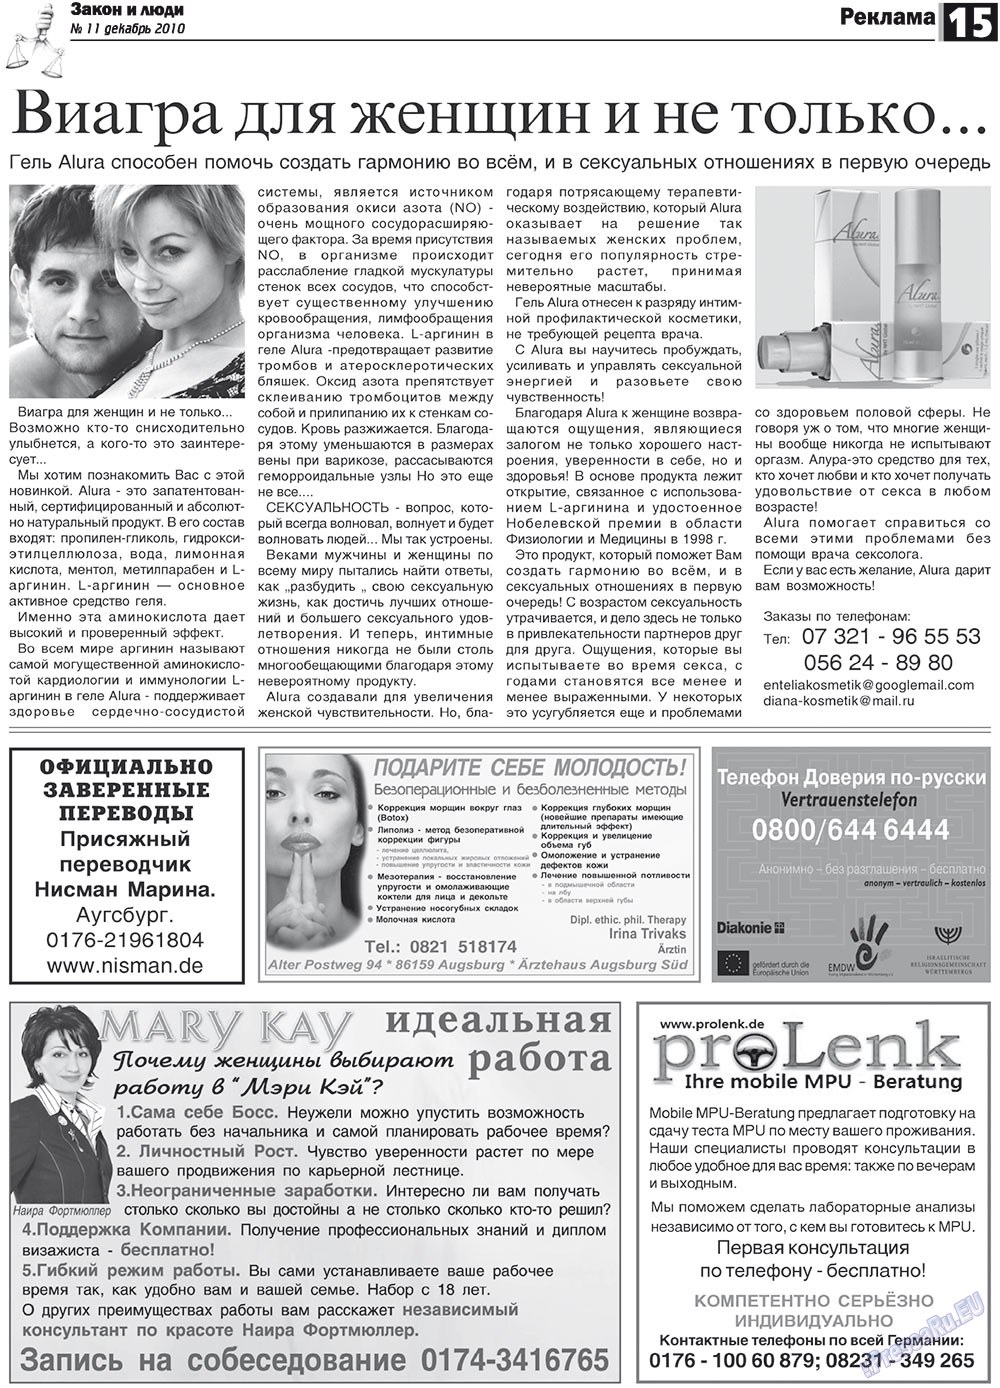 Закон и люди, газета. 2010 №11 стр.15